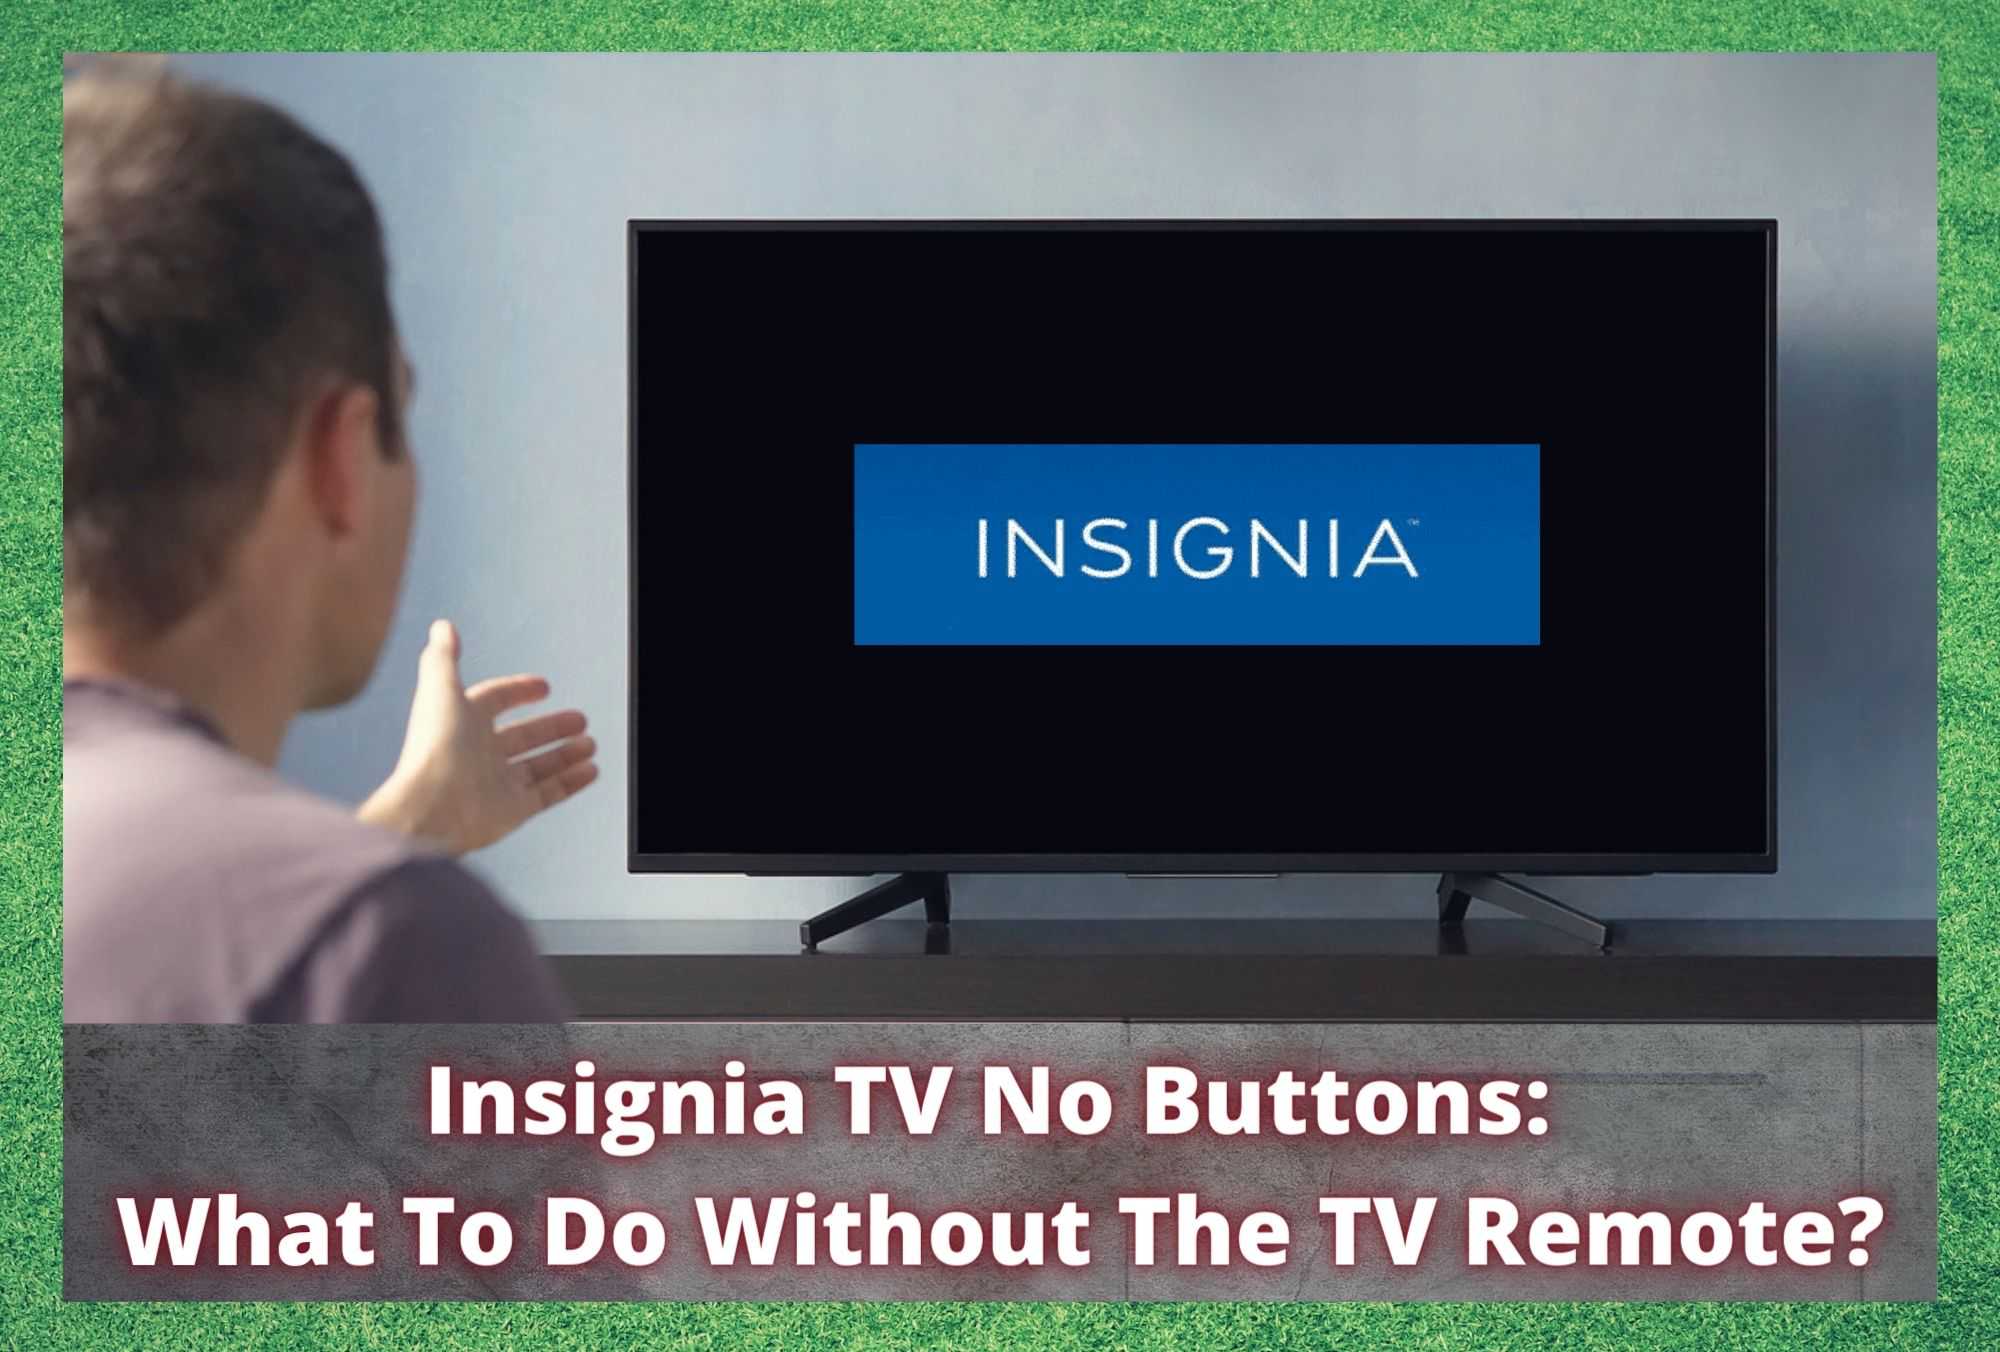 Insignia TV utan knappar: Vad ska man göra utan TV-fjärrkontrollen?